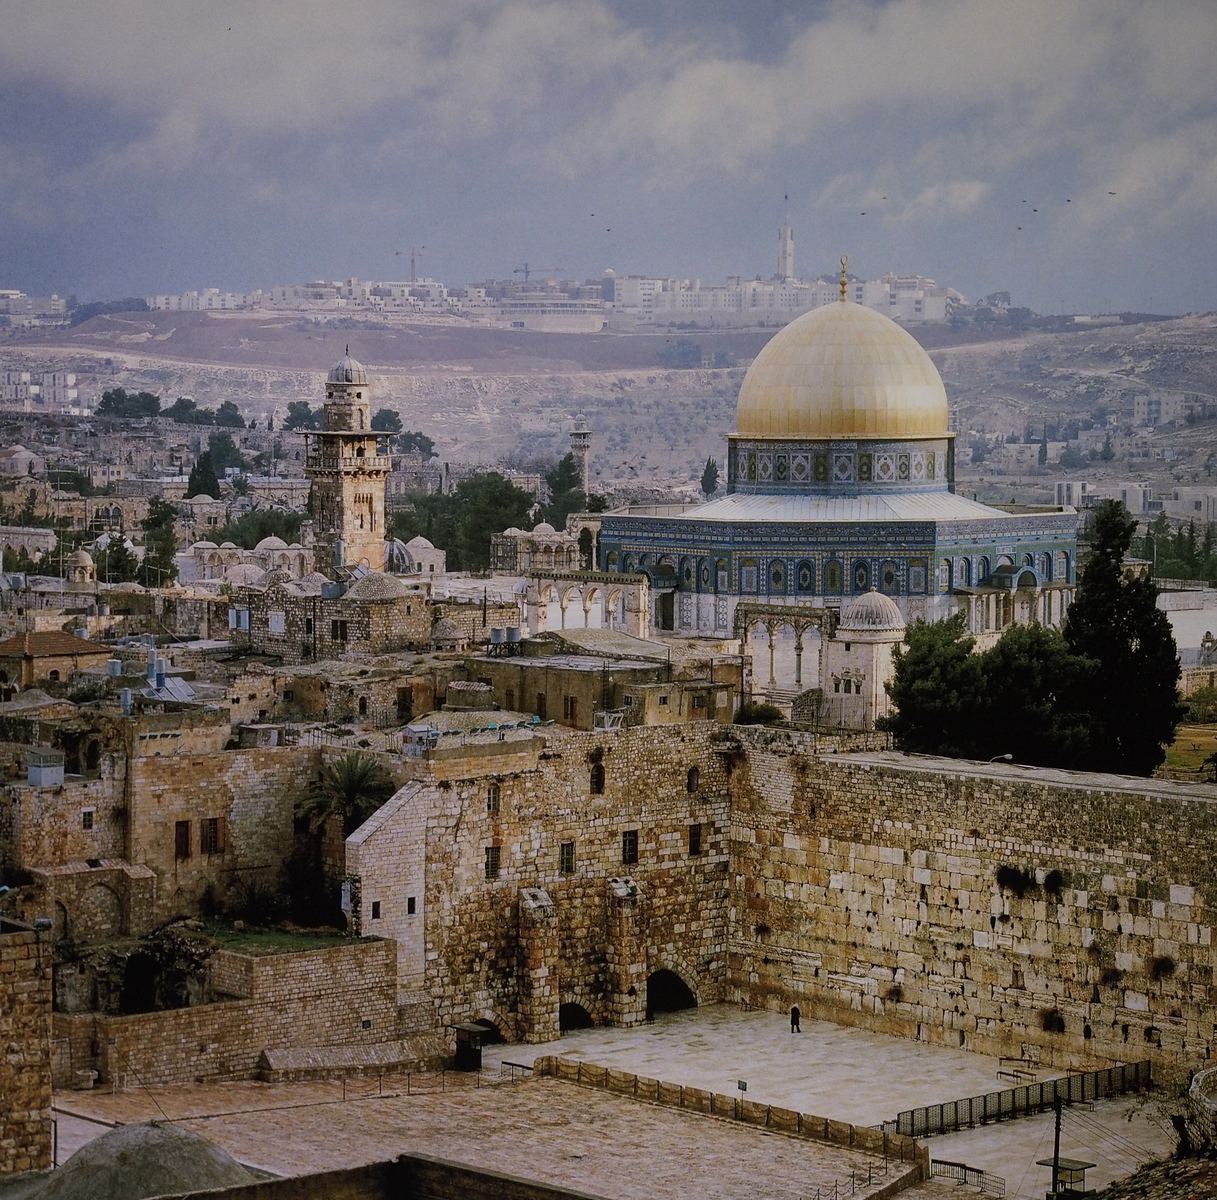 Western Wall & Temple Mount, Jerusalem